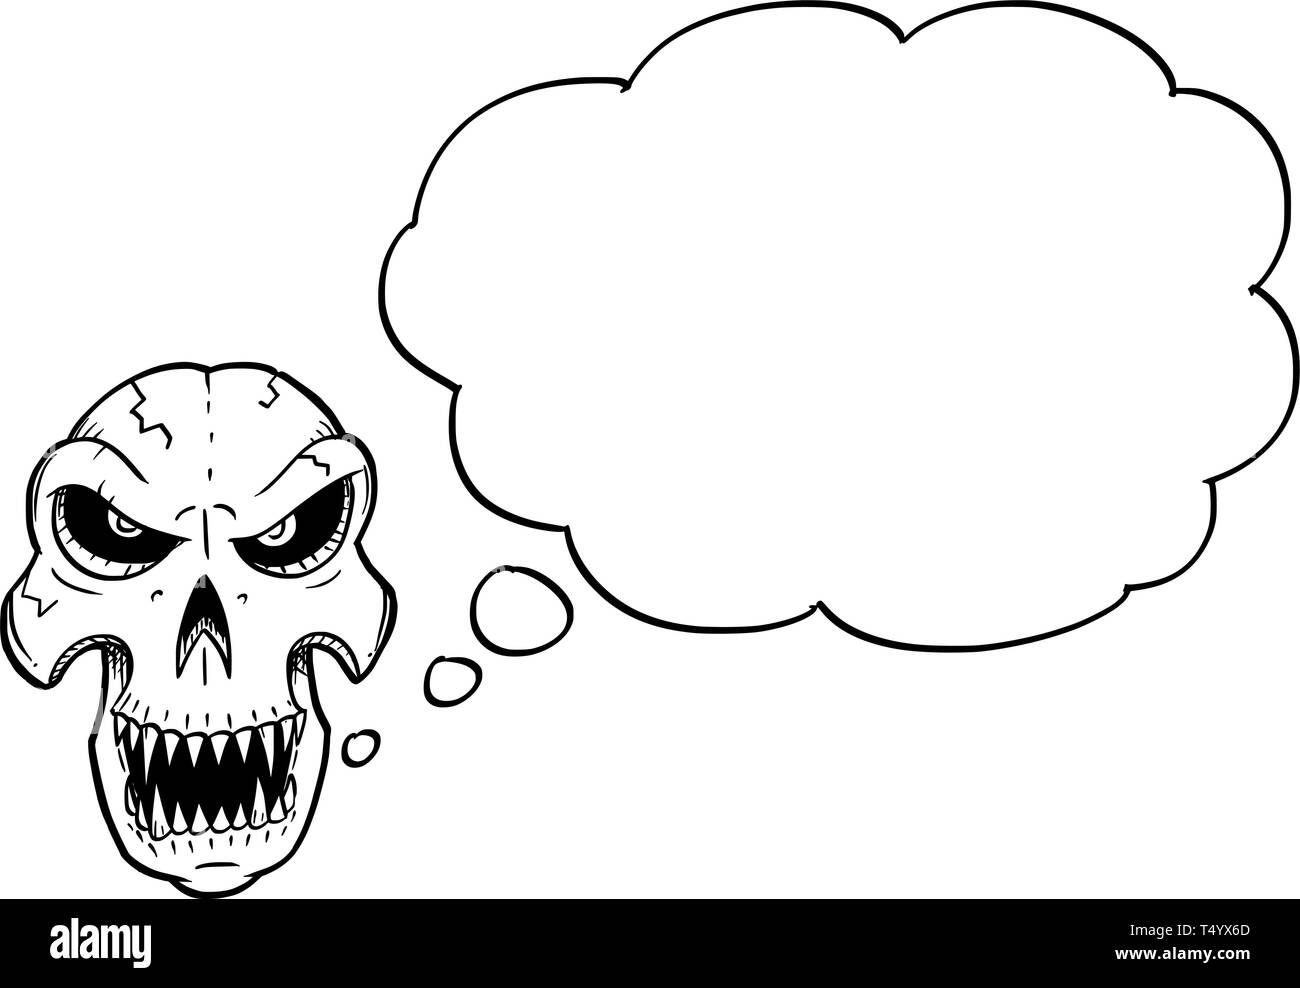 Disegno animato illustrazione concettuale di angry monster cranio con denti affilati cercando anteriore con un discorso di vuoti o bolle di testo o un palloncino. Illustrazione Vettoriale